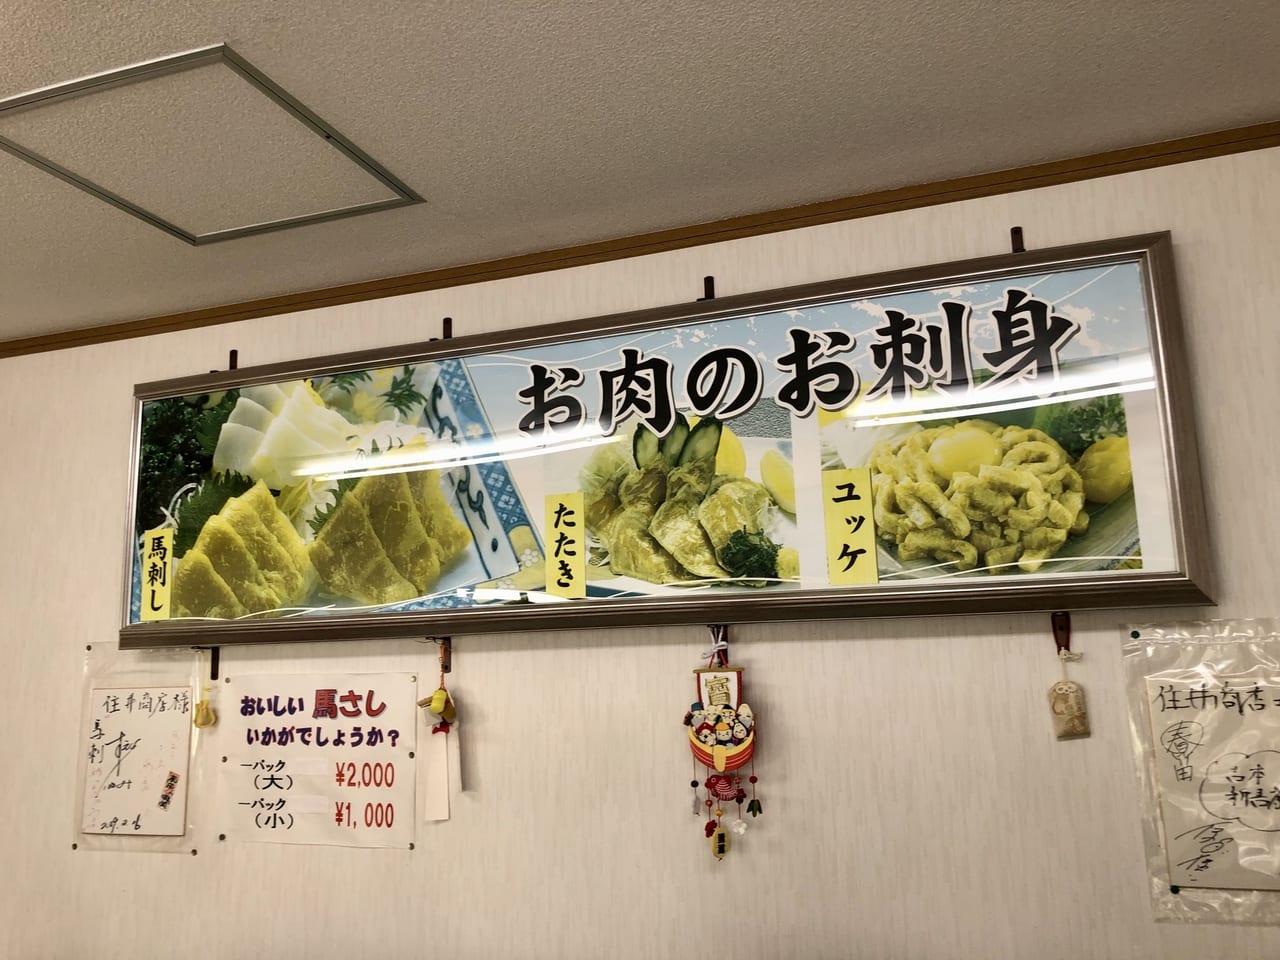 【大阪市東住吉区】創業73年『チェリースモーク竹村商店』さん 再開されてました！ 大切に手作りされた価値ある逸品が食べられるお店です